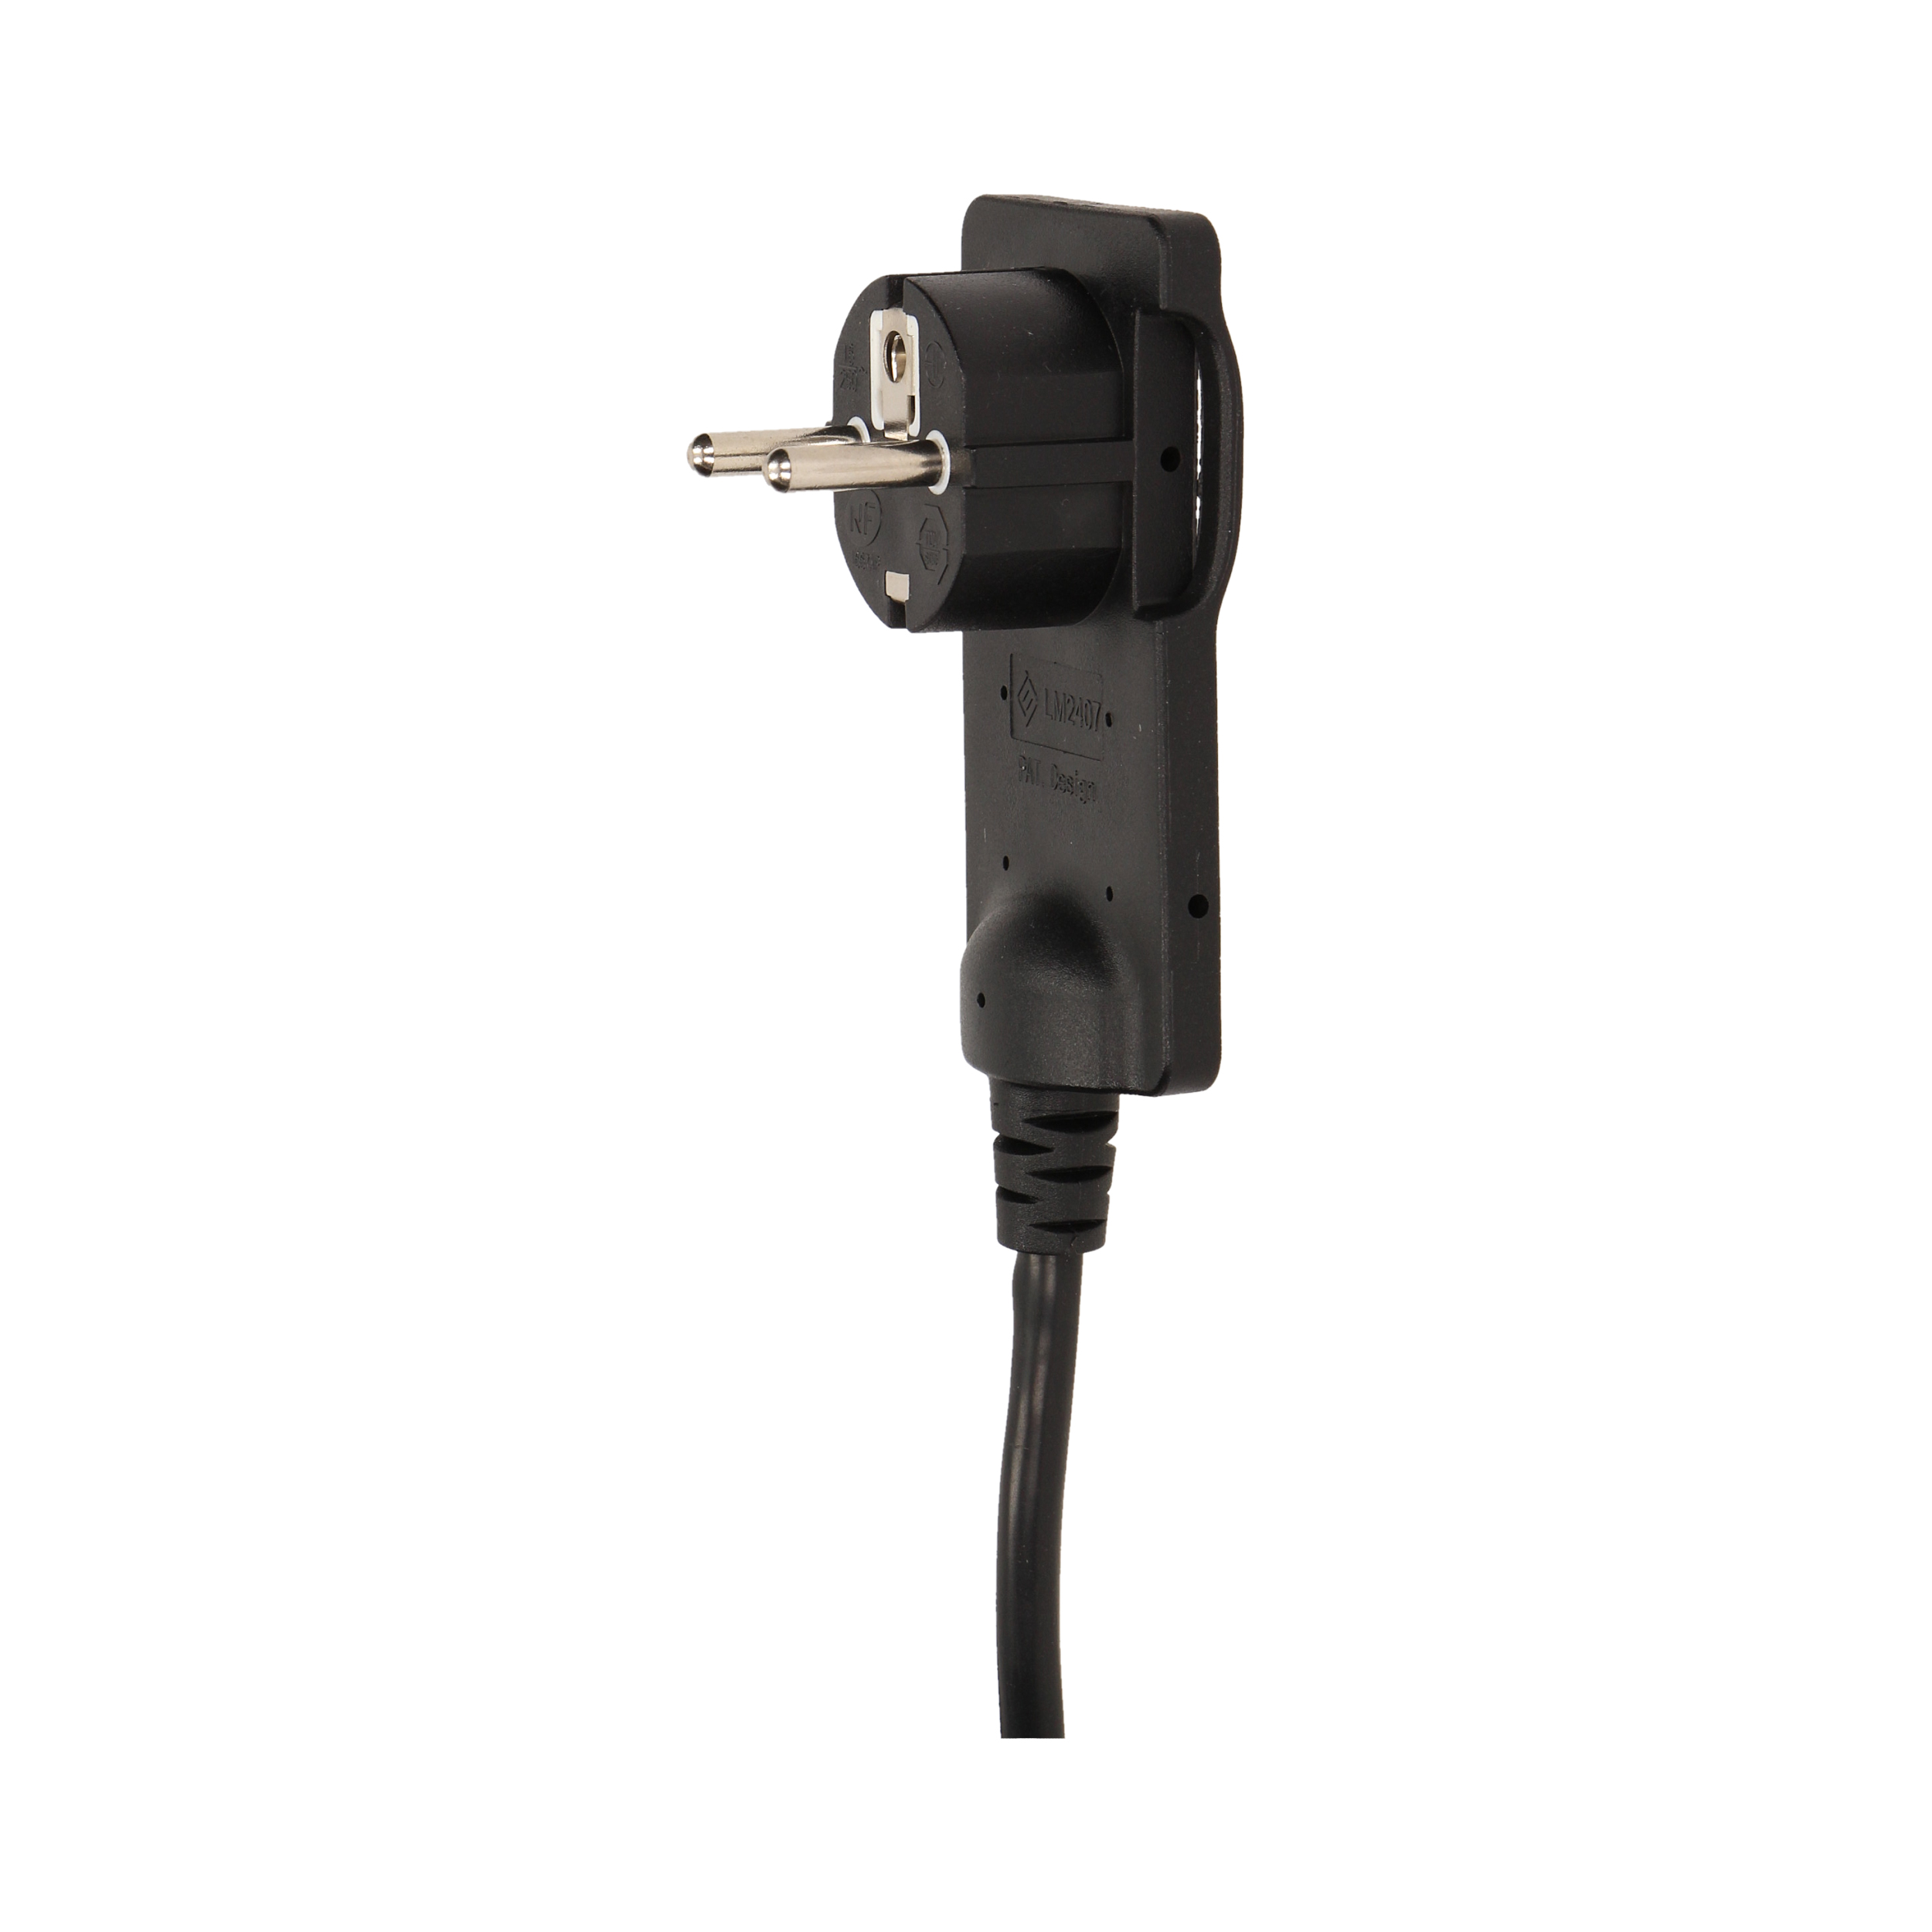 Stecher extra slim cu maner ORNO OR-AE-1312/B, 250V, cablu 1.5m, negru